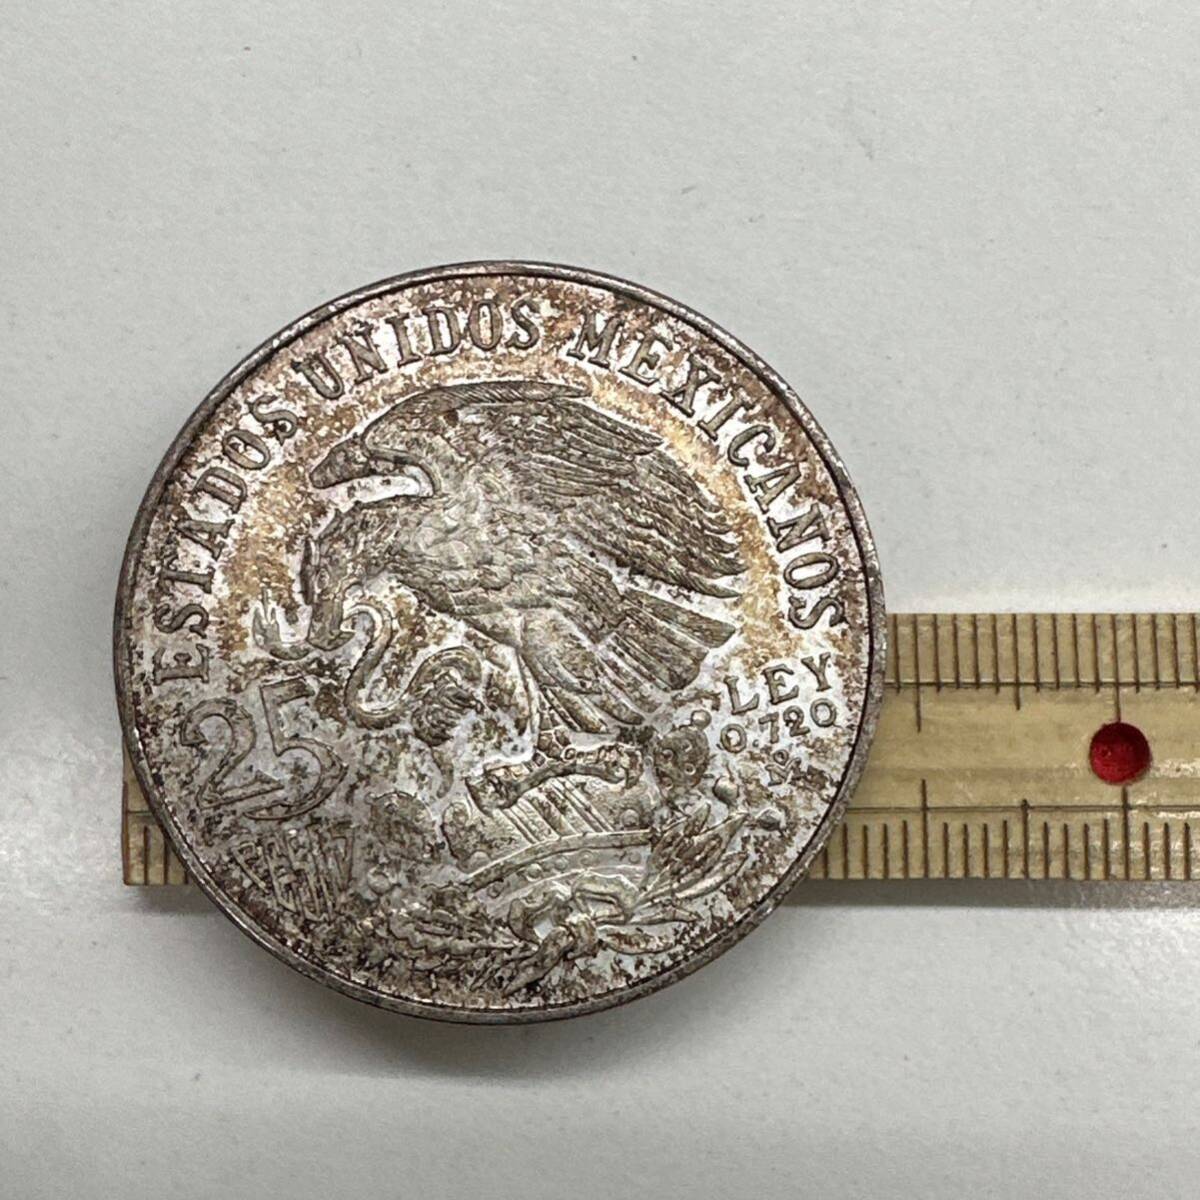 【TS0319】1968年 メキシコオリンピック 25ペソ銀貨 硬貨 コイン 通貨 貨幣 レトロ アンティーク コレクションの画像4